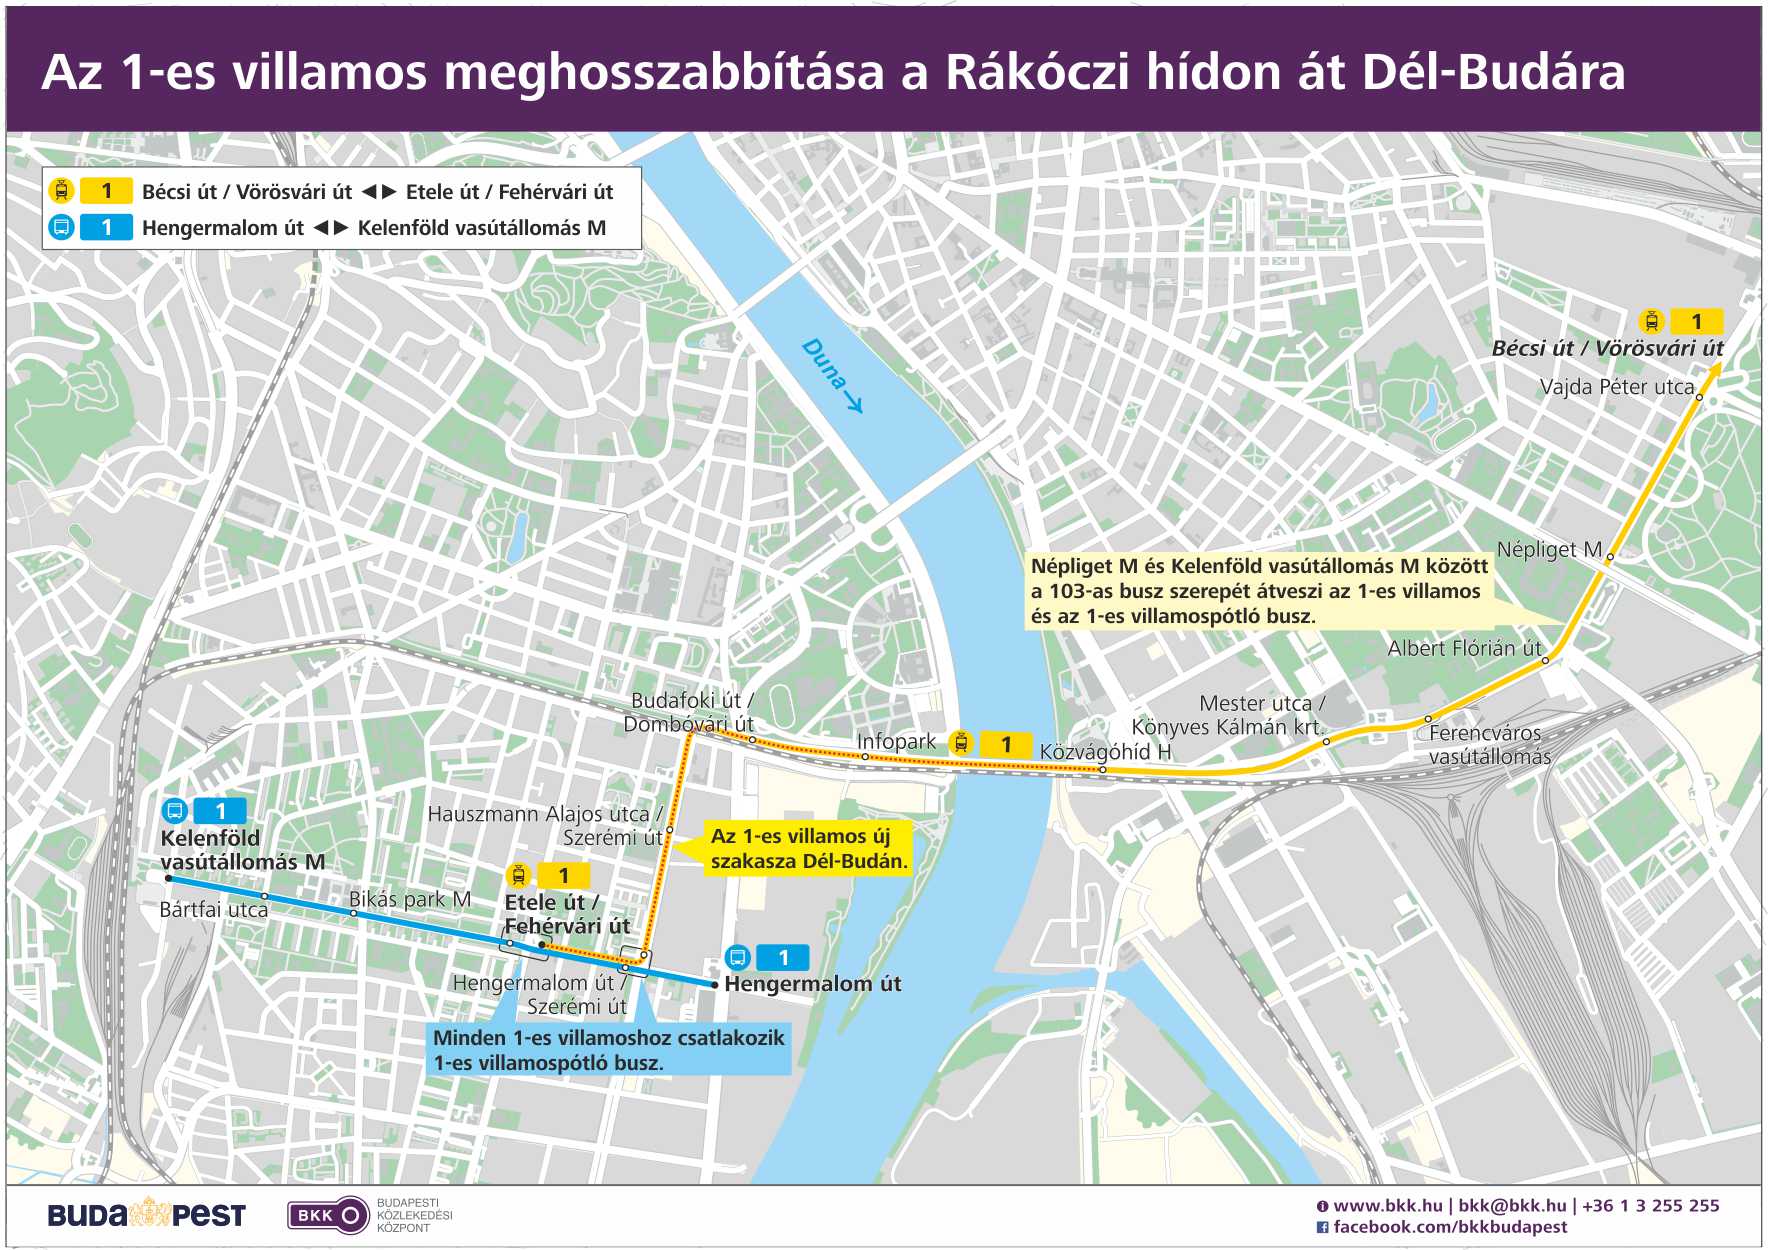 budapest 1 es villamos térkép Társadalami egyeztetés (1 es villamos)   Budapesti Közlekedési  budapest 1 es villamos térkép